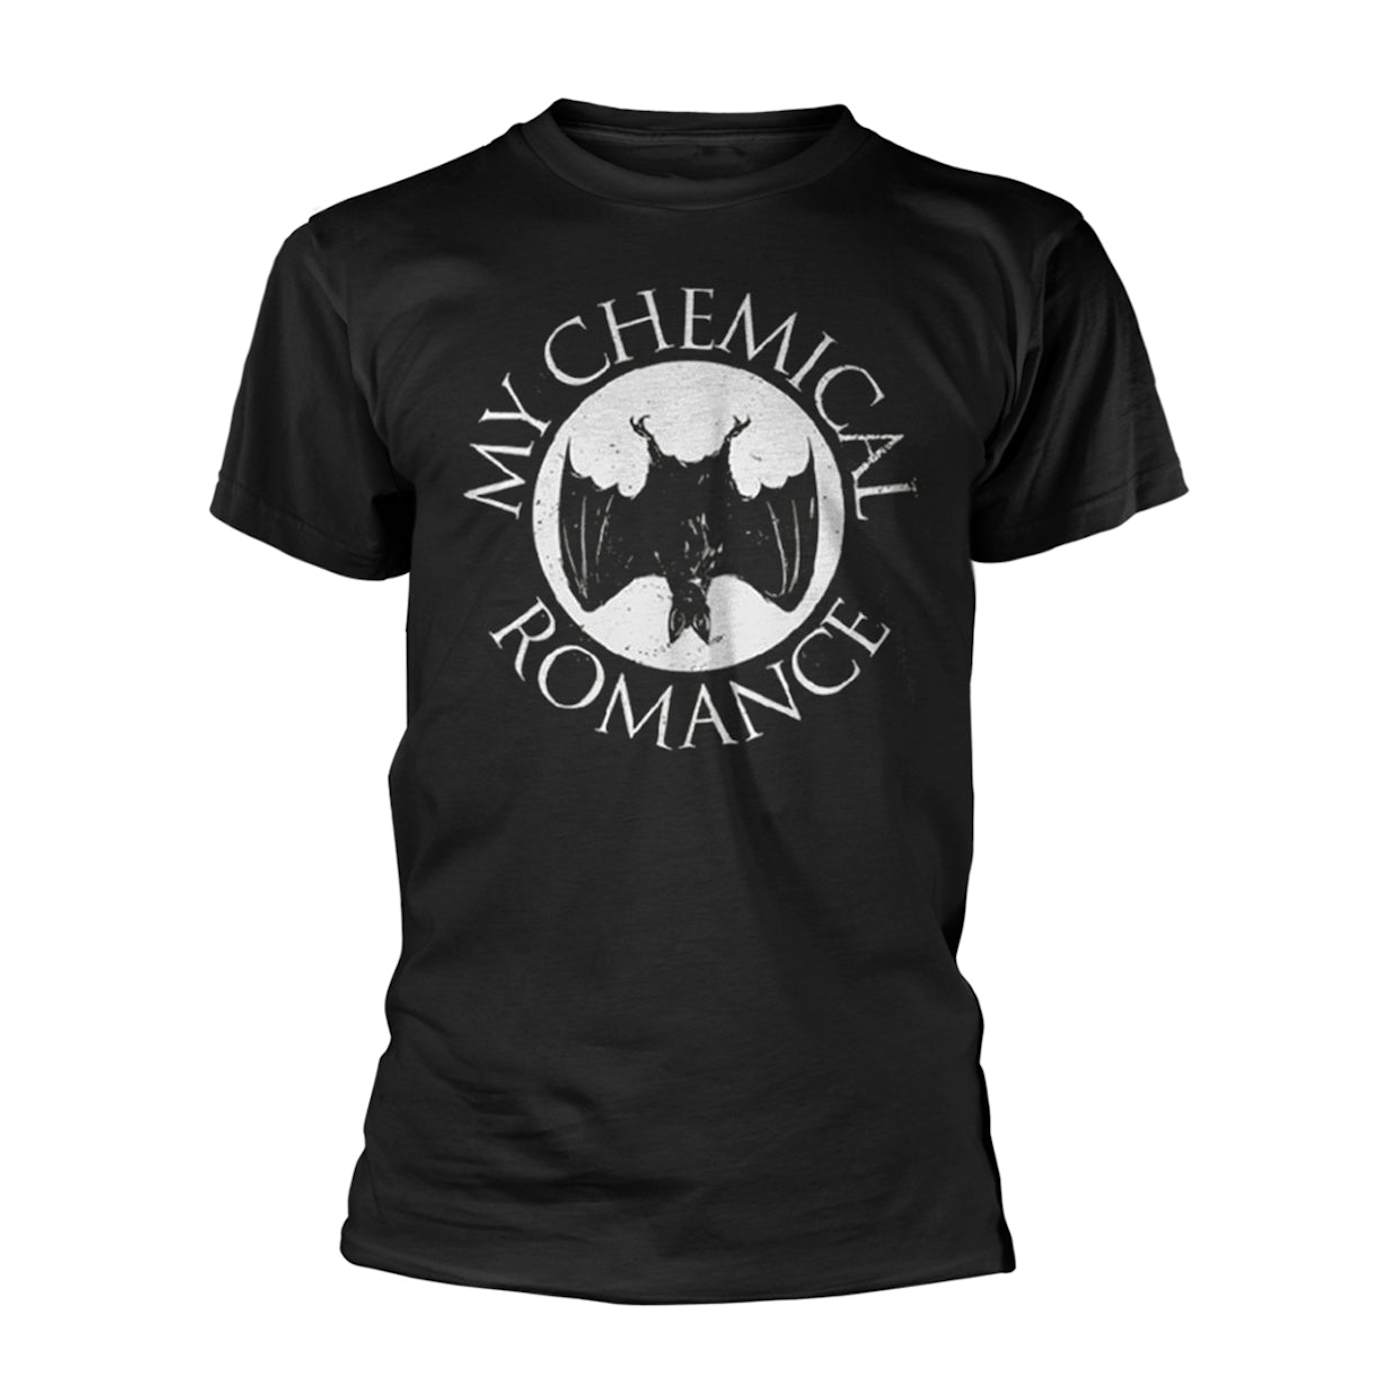 My Chemical Romance T Shirt - Bat